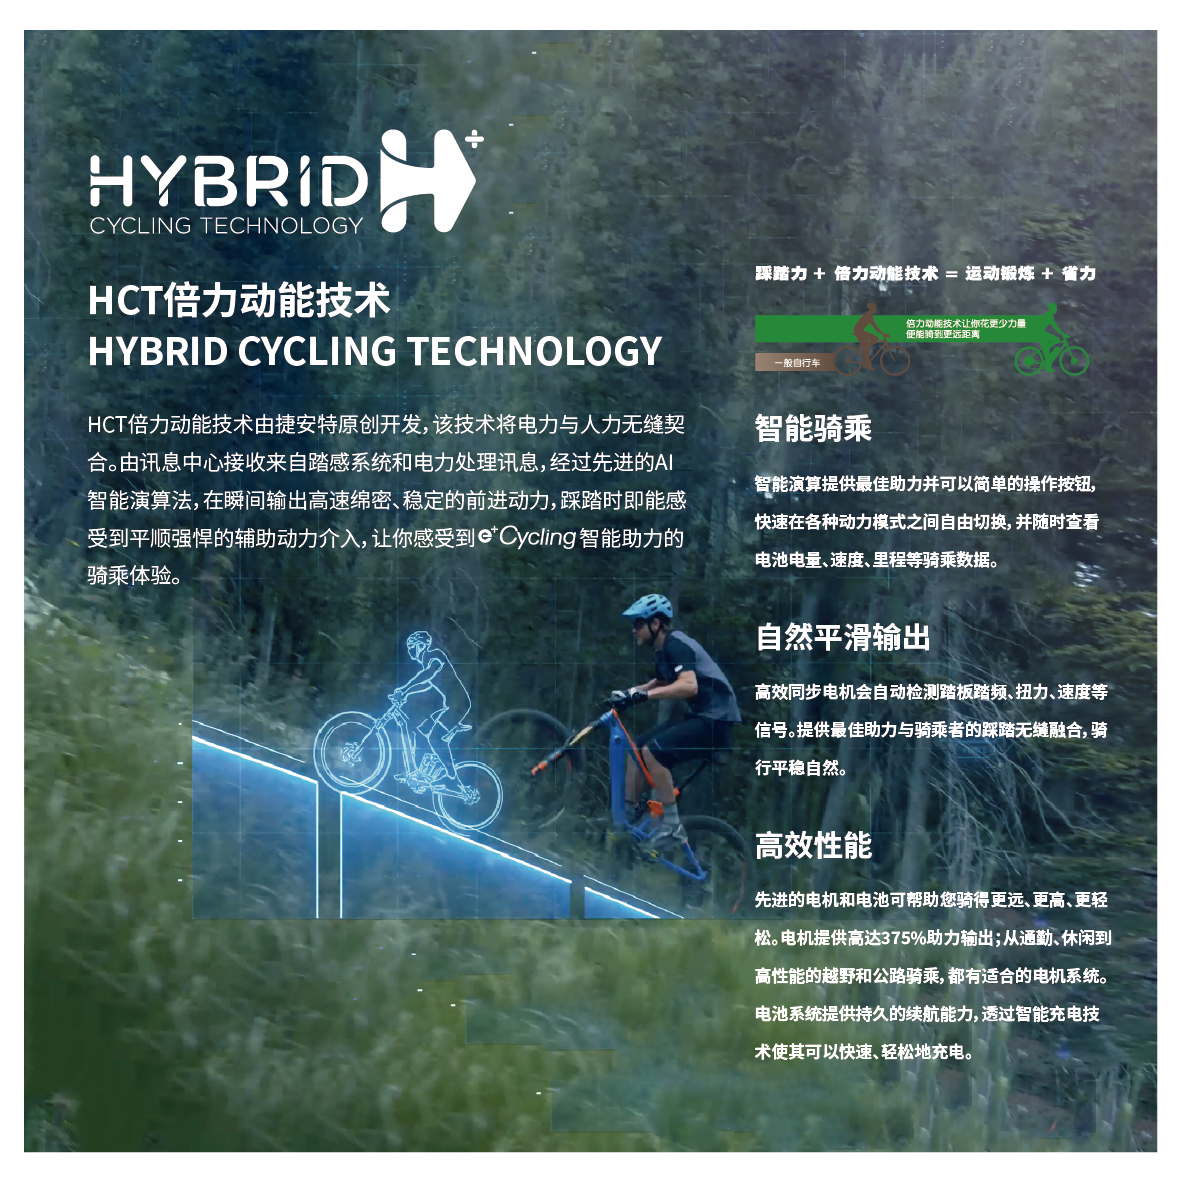 e+Cycling智能助力自行车优势技术 电子版_画板 1 副本 5.png